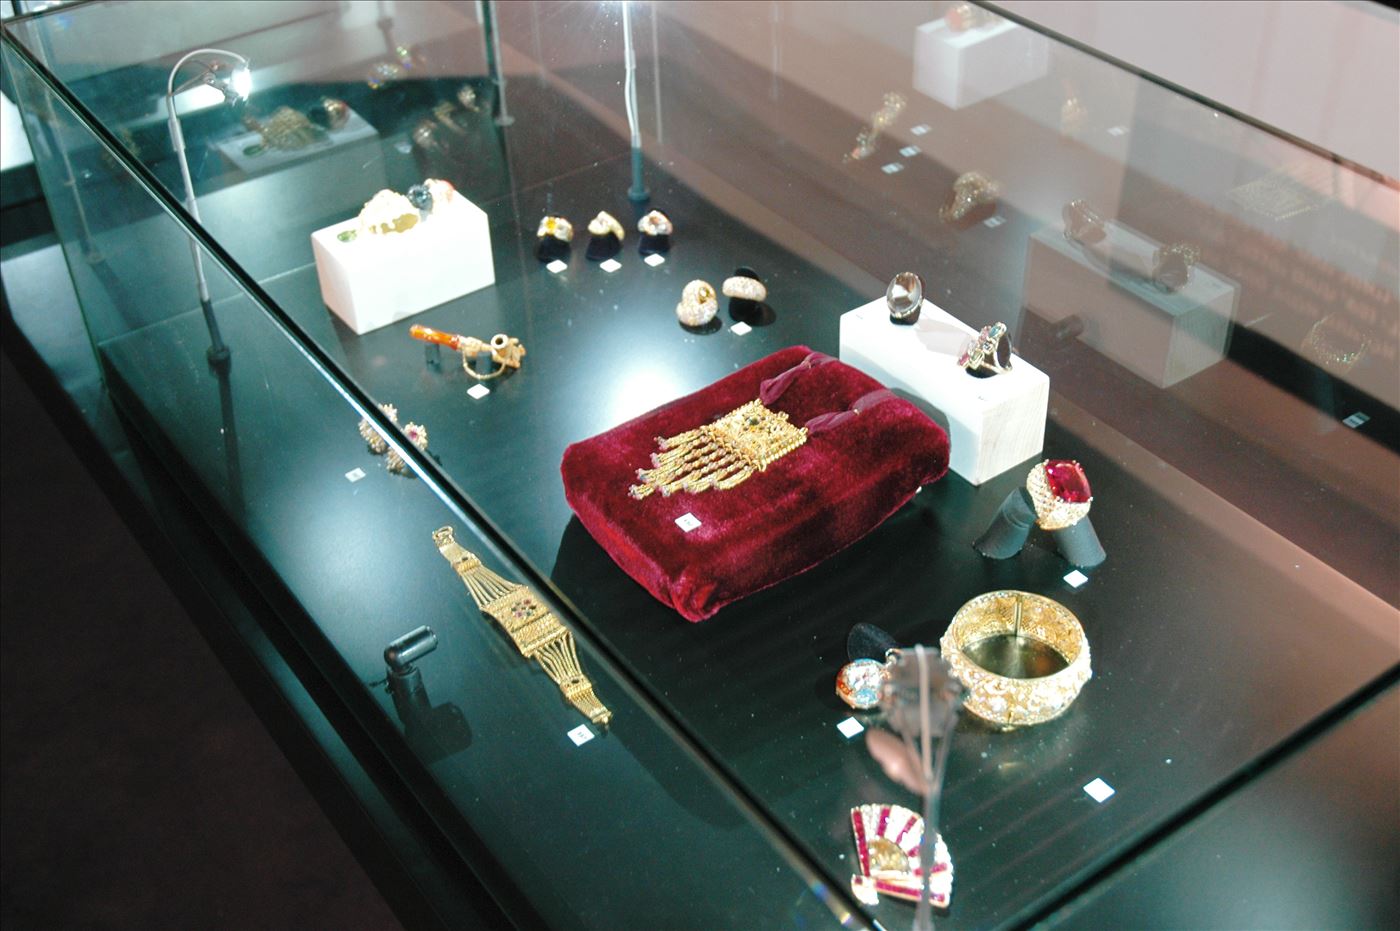 גלרייה - תערוכת תכשיטים במוזיאון - אבנר צופיוף 31.5.2006, 3 מתוך 22